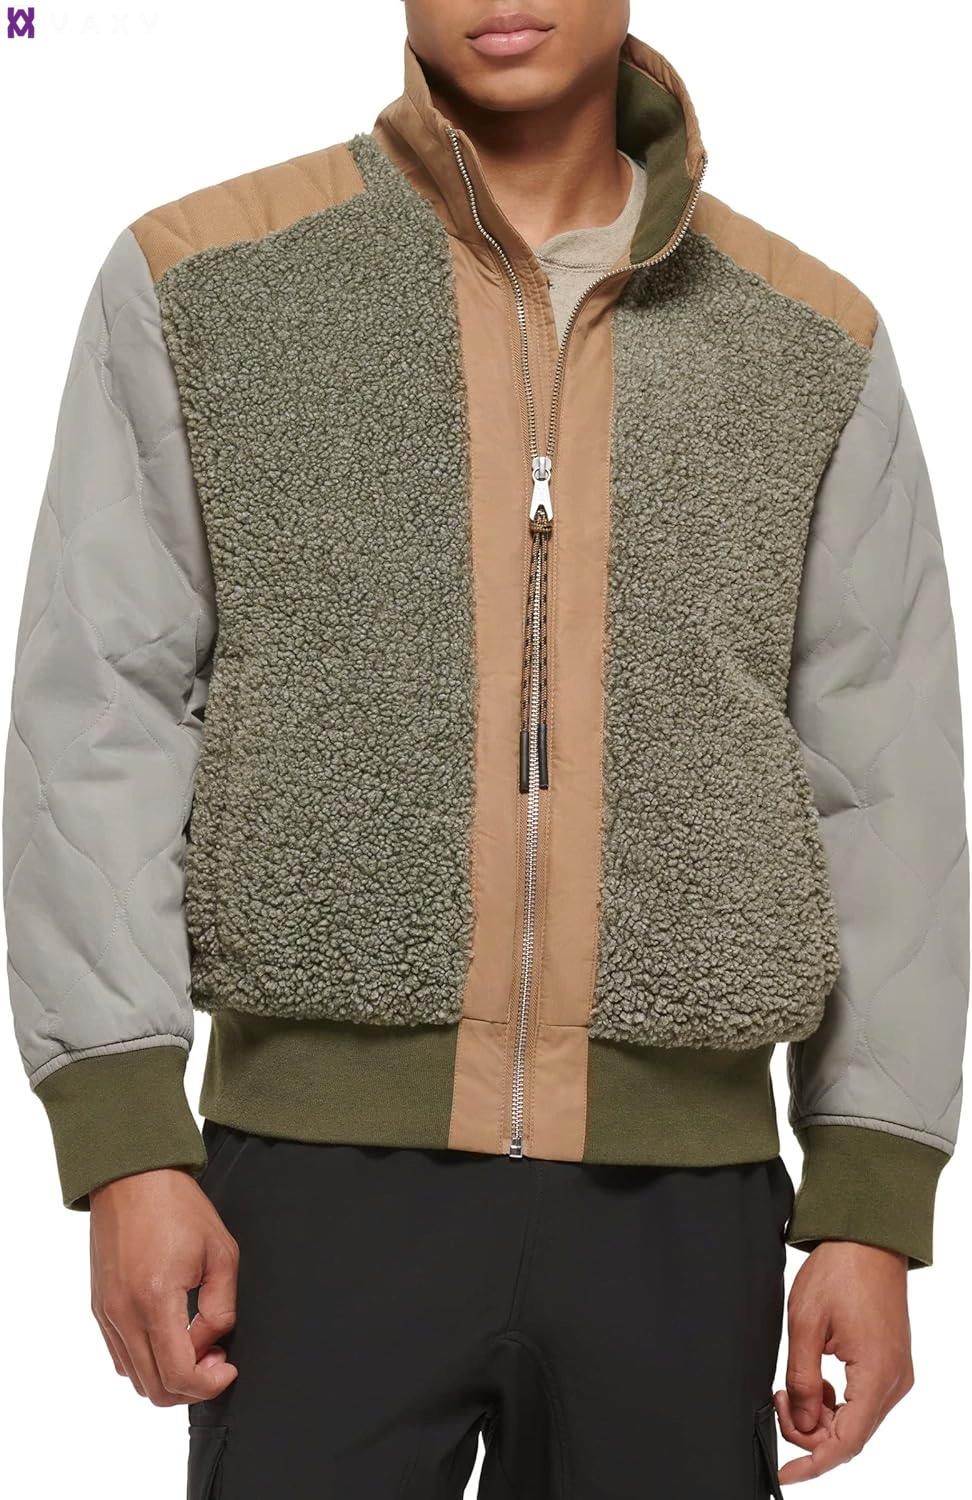 Với độ dày ấm áp, vải sherpa luxe là lựa chọn hàng đầu cho áo khoác nữ.